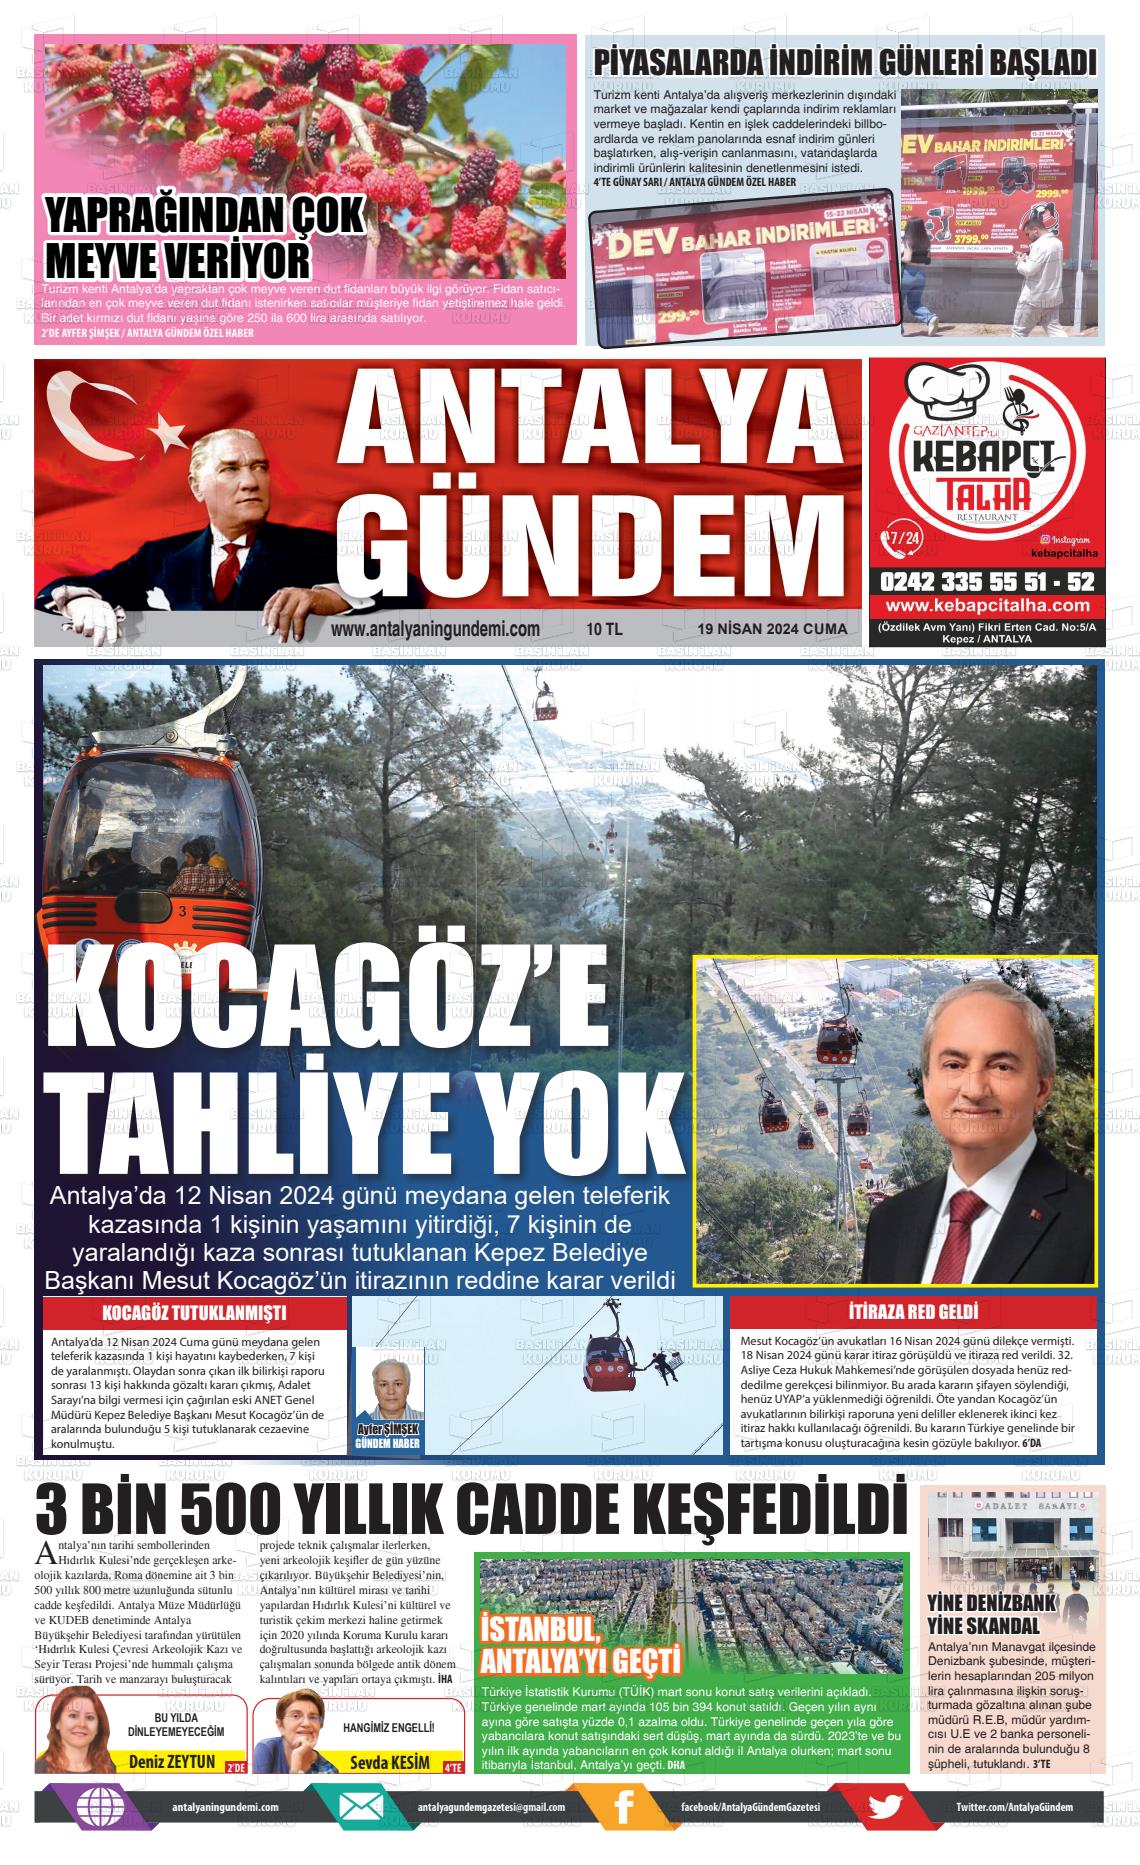 20 Nisan 2024 Antalya'nın Gündemi Gazete Manşeti